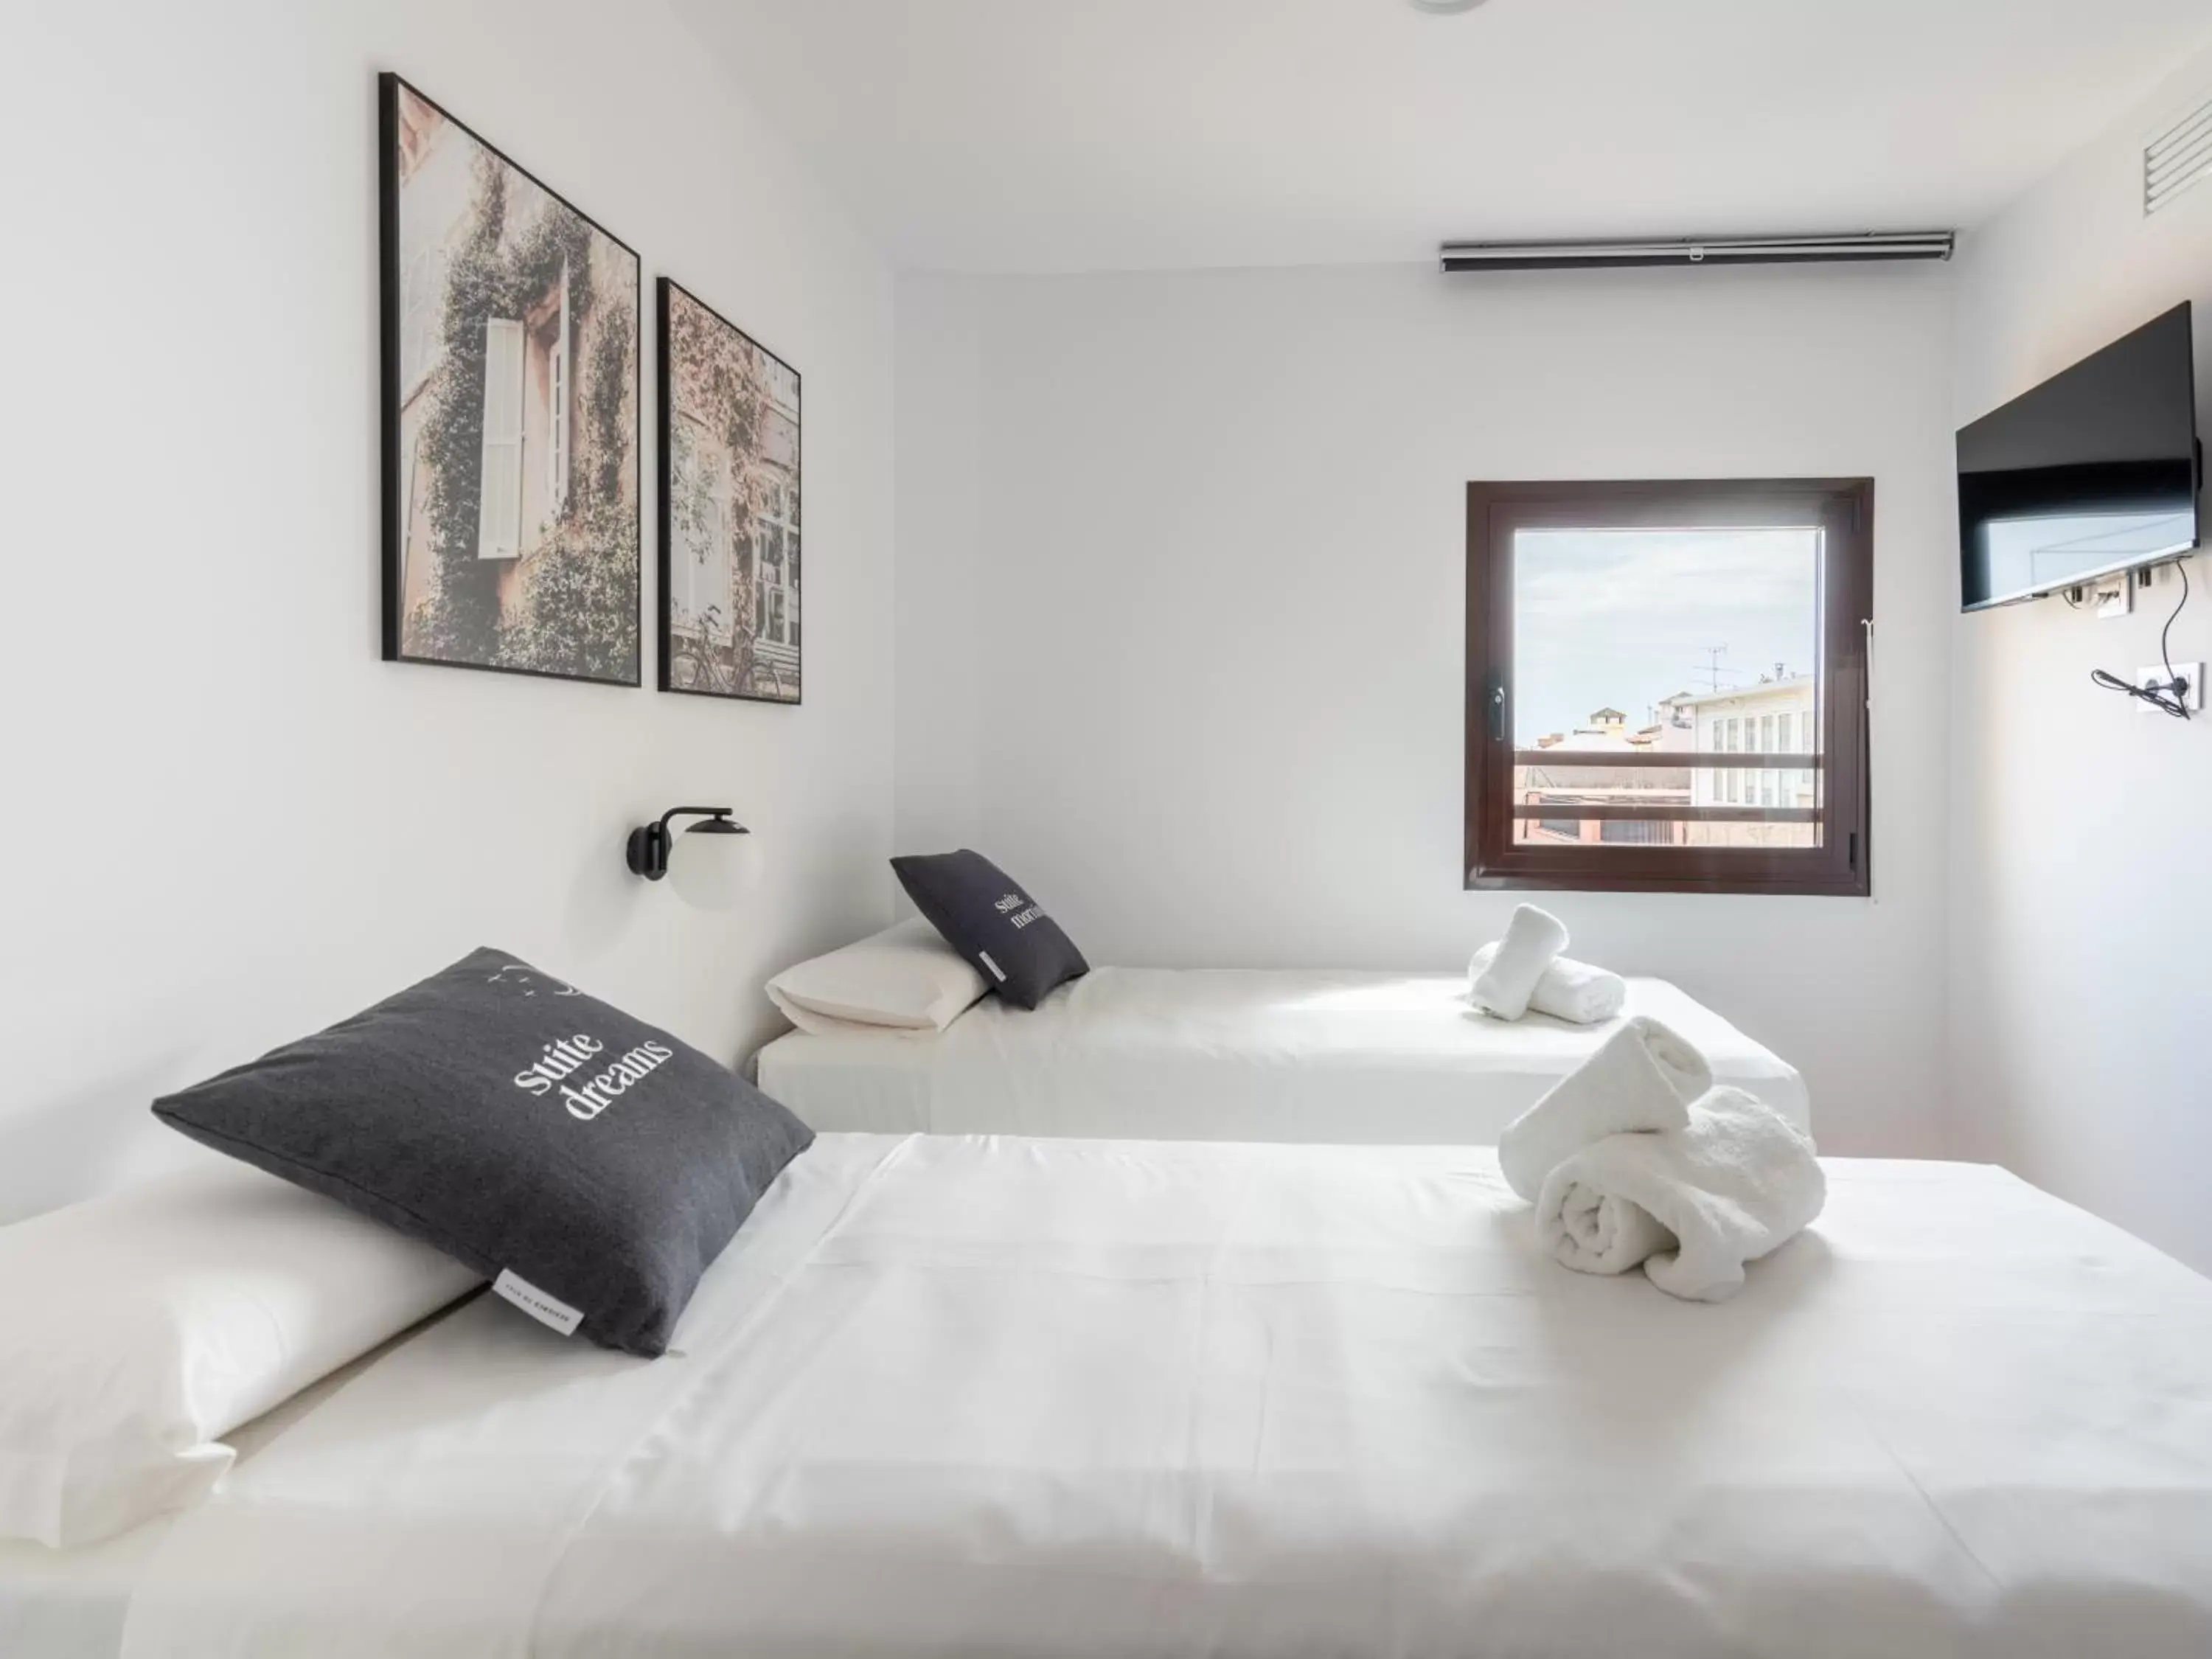 Bed in limehome Barcelona Carrer de Fontcoberta - Digital Access